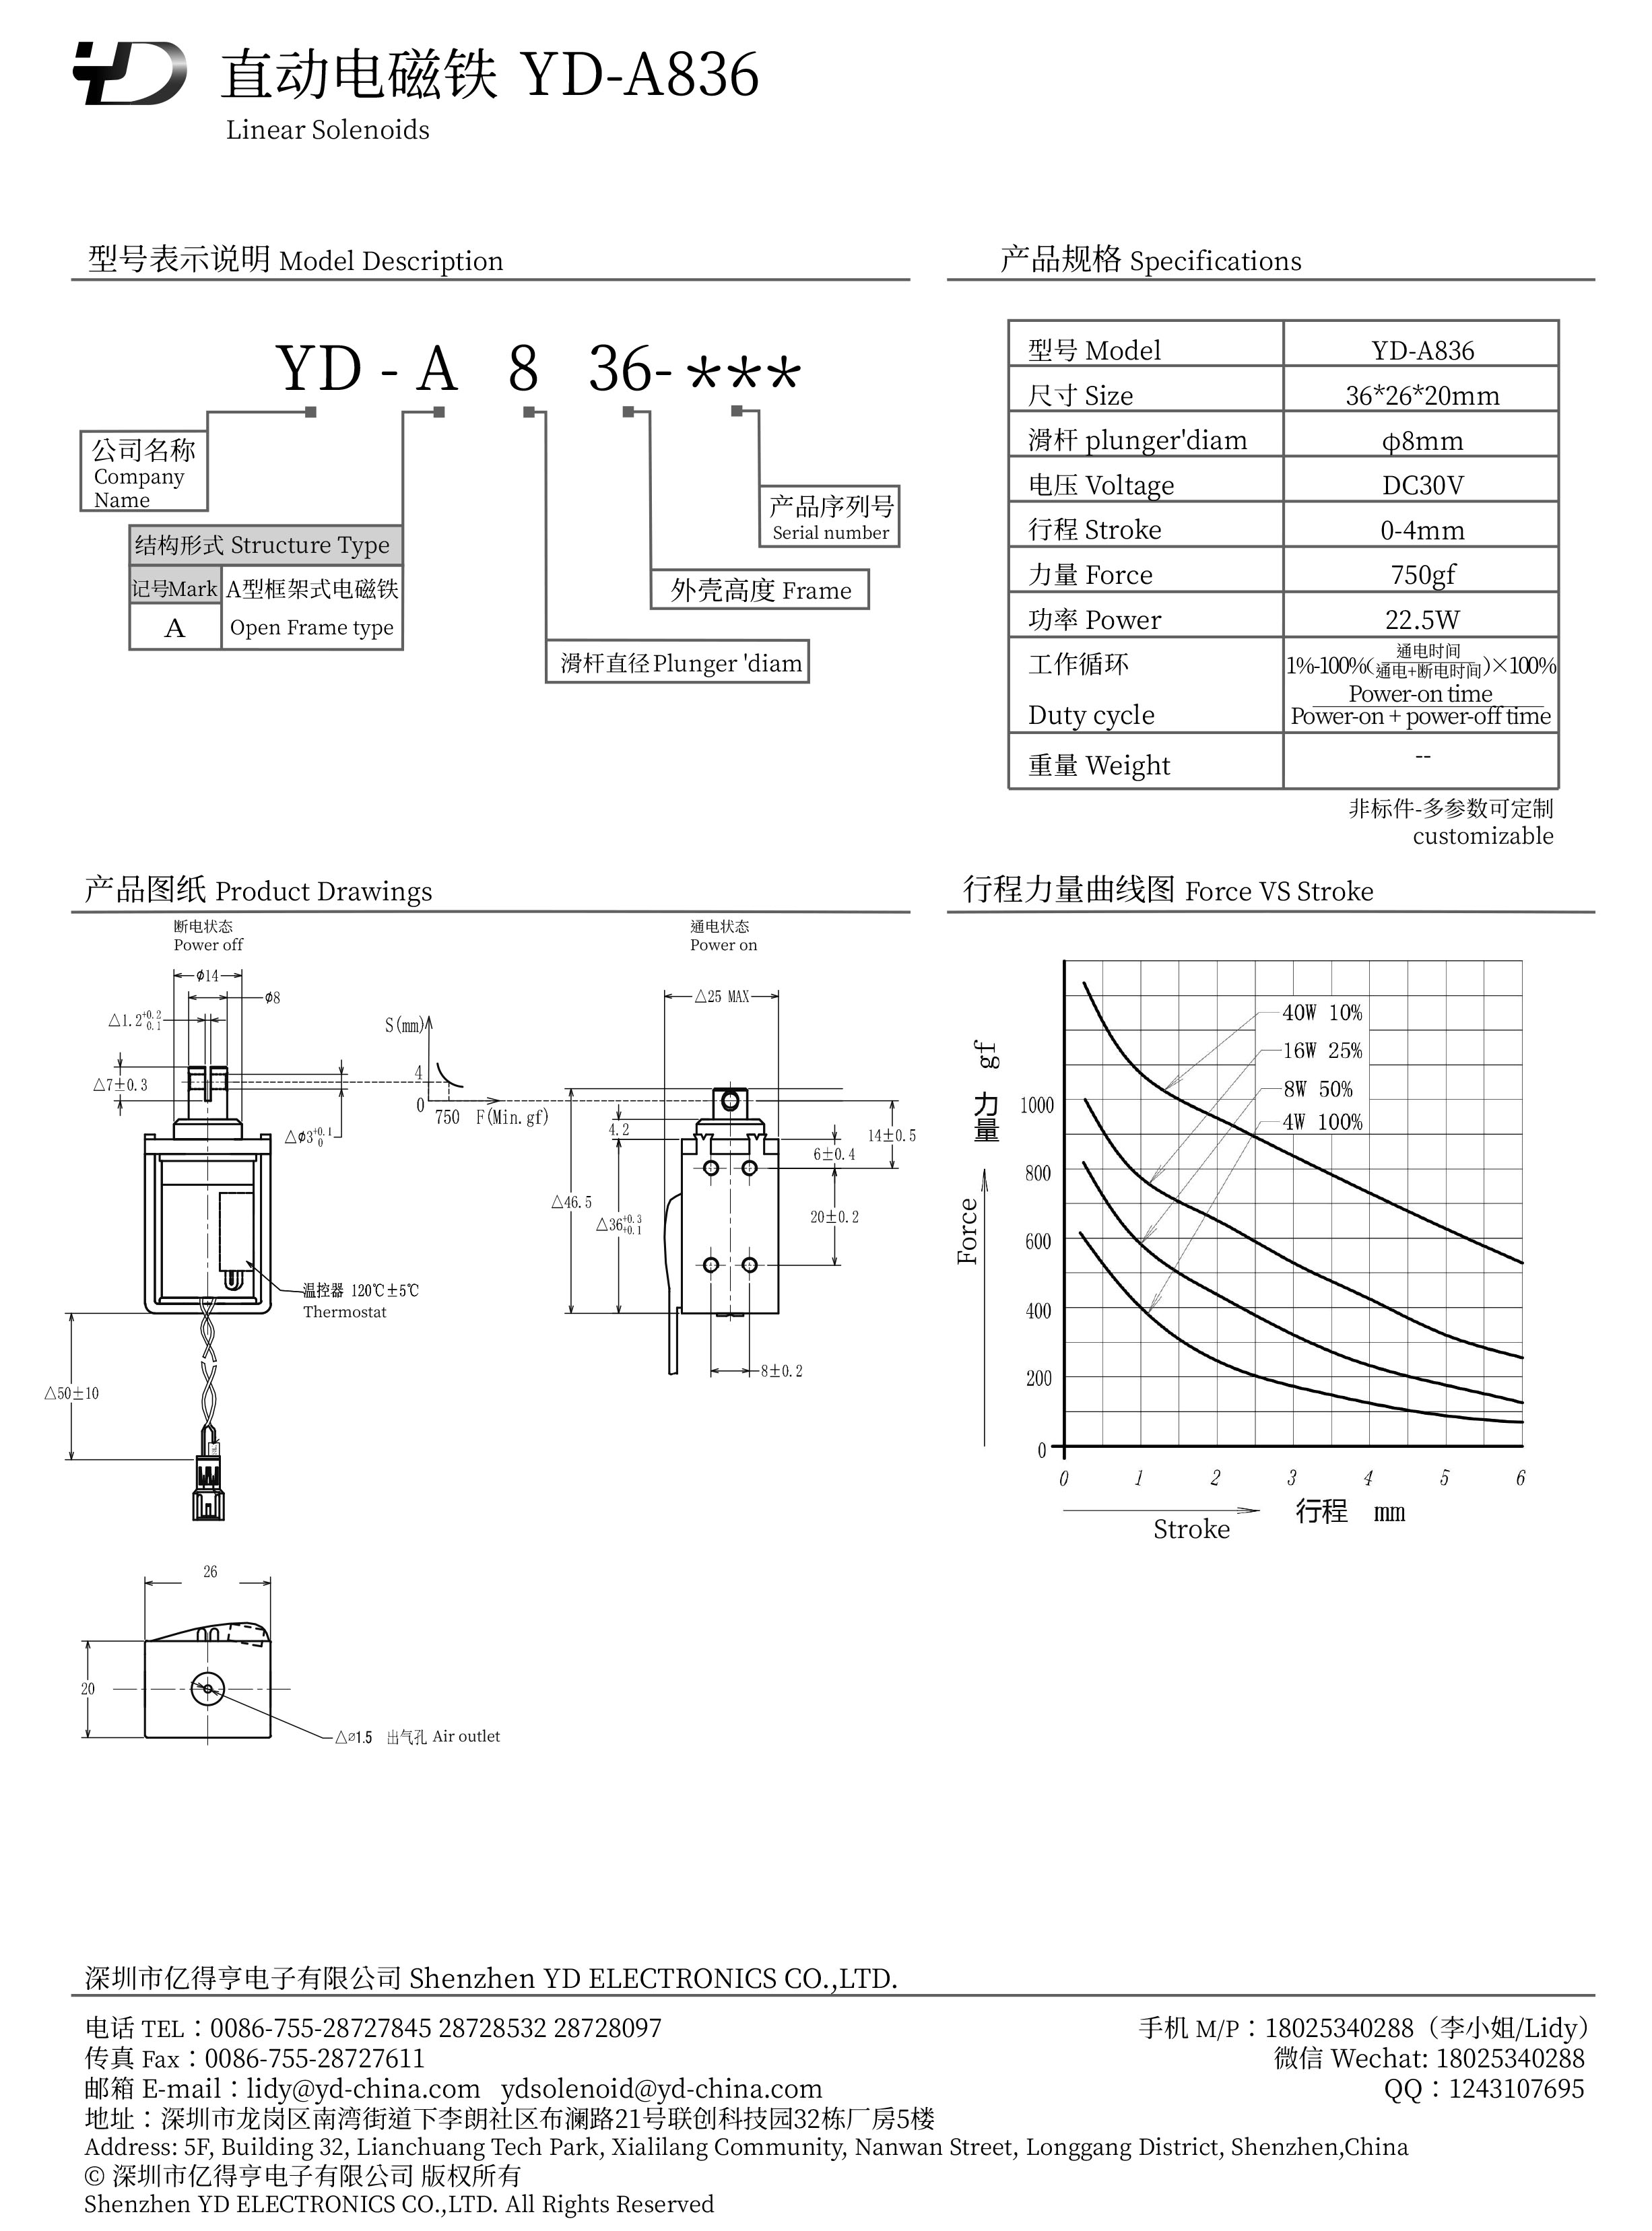 YD-A836-PDF.jpg